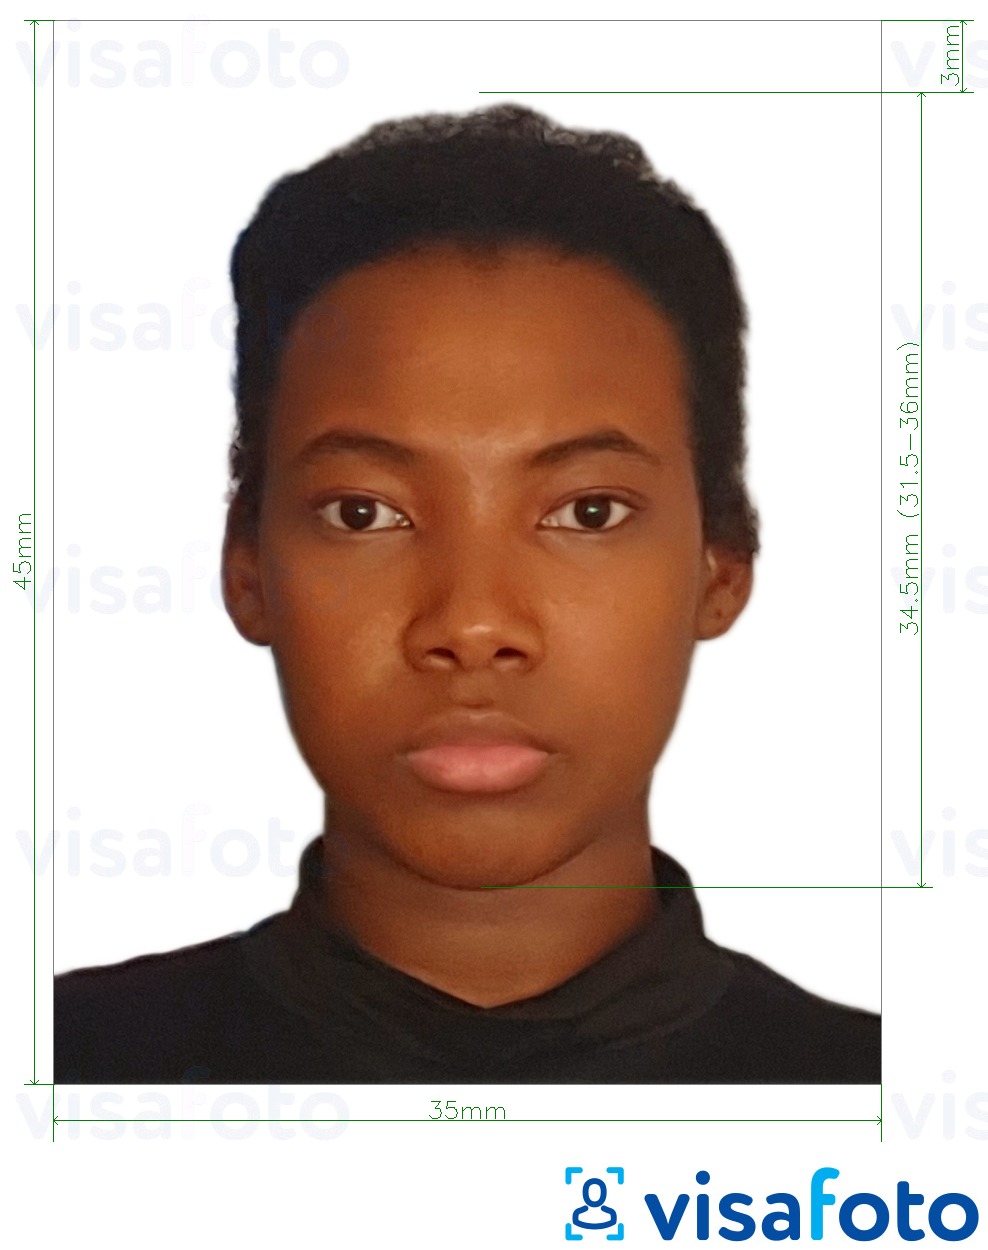 Voorbeeld van foto voor Guyana paspoort 45x35 mm (1,77 x 1,38 inch) met exacte maatspecificatie